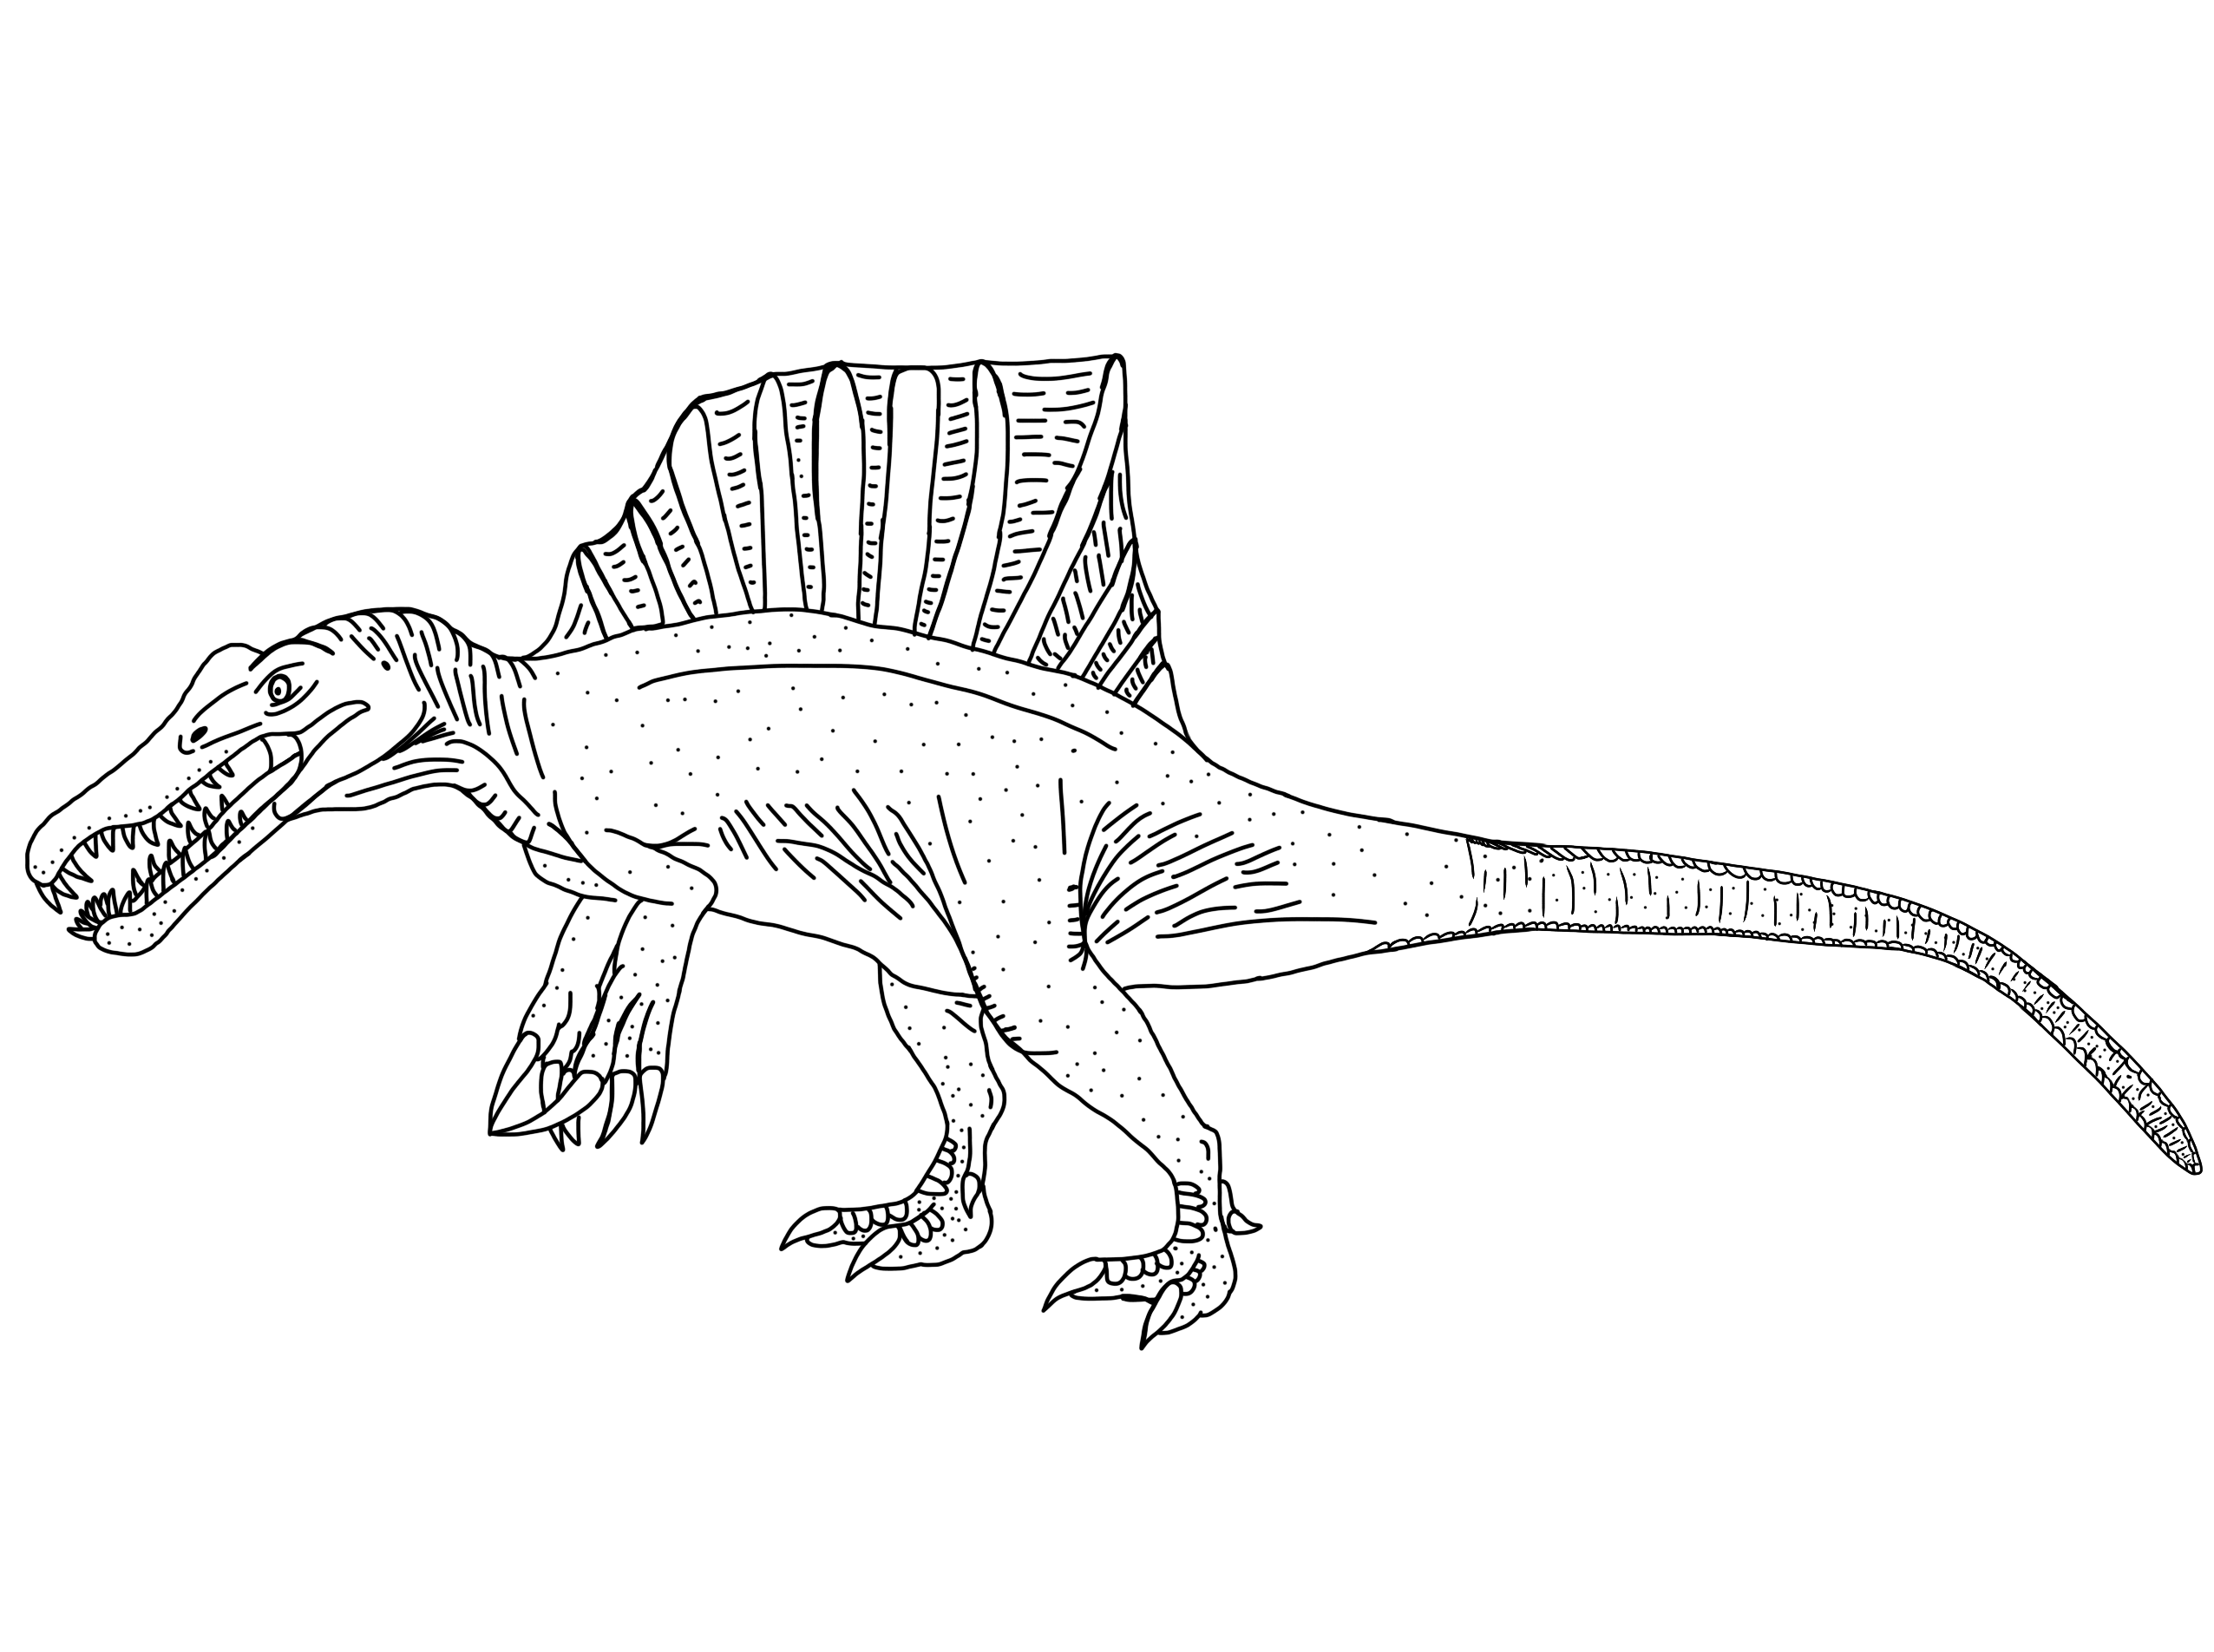 Spinosaurus 2014/2015 (Updated) by DinoBirdMan on DeviantArt